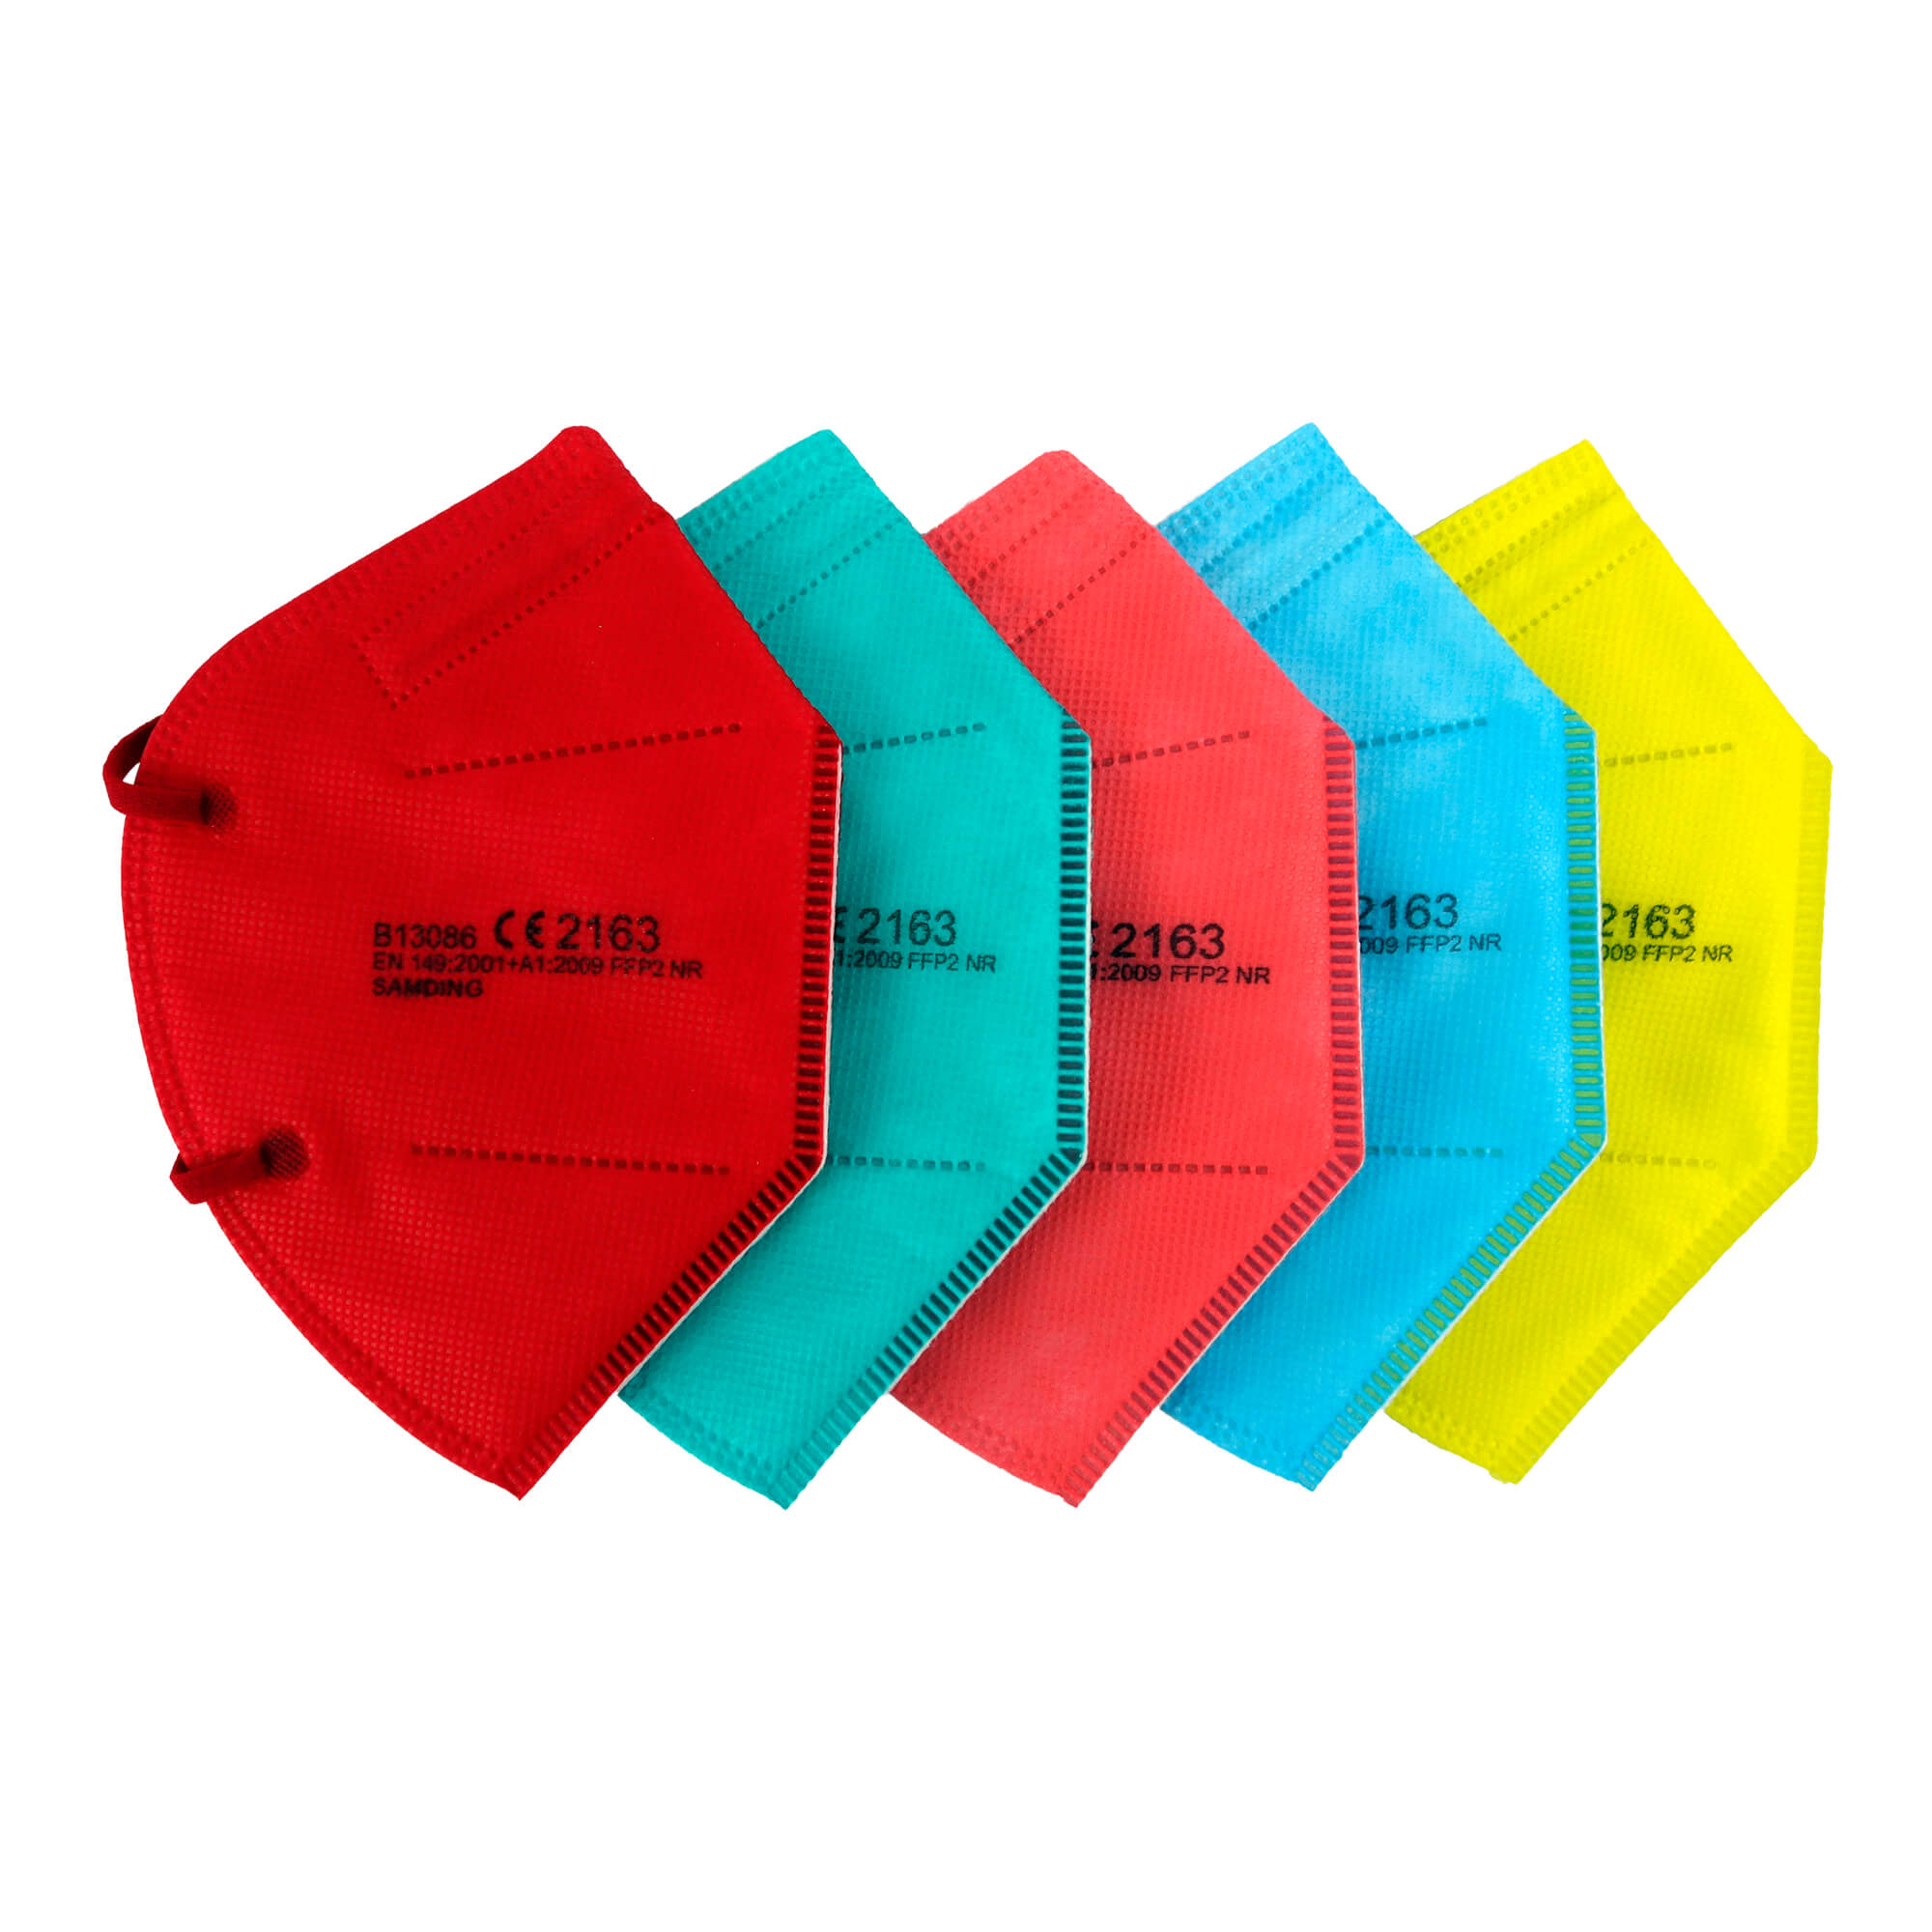 Fünf verschieden farbige FFP2-Masken in einer Packung. Farbenfrohe Töne. Nicht einzeln verpackt.